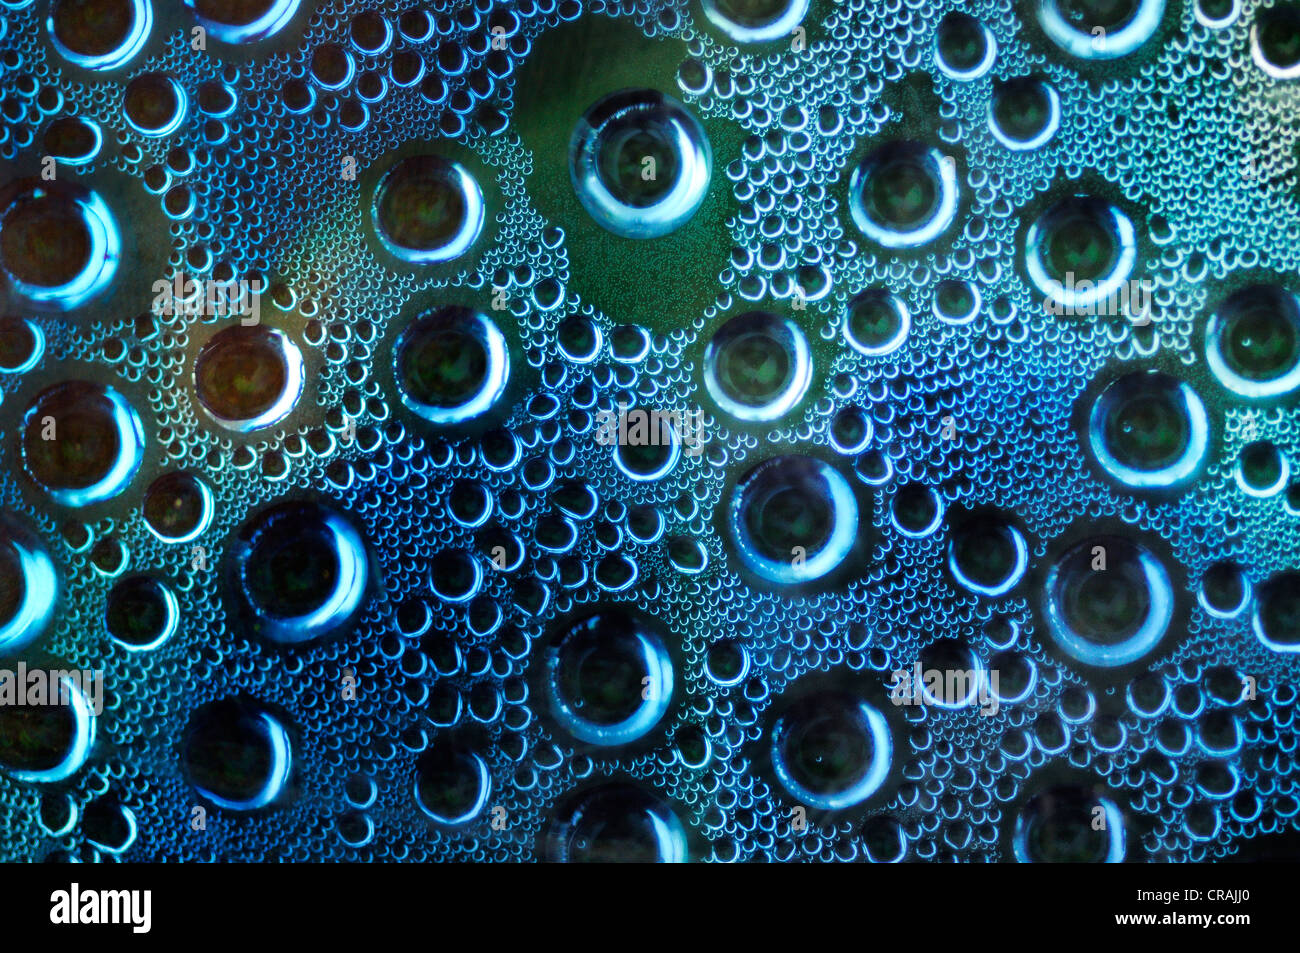 L'eau condensée, gouttes d'eau sur une plaque de verre Photo Stock - Alamy